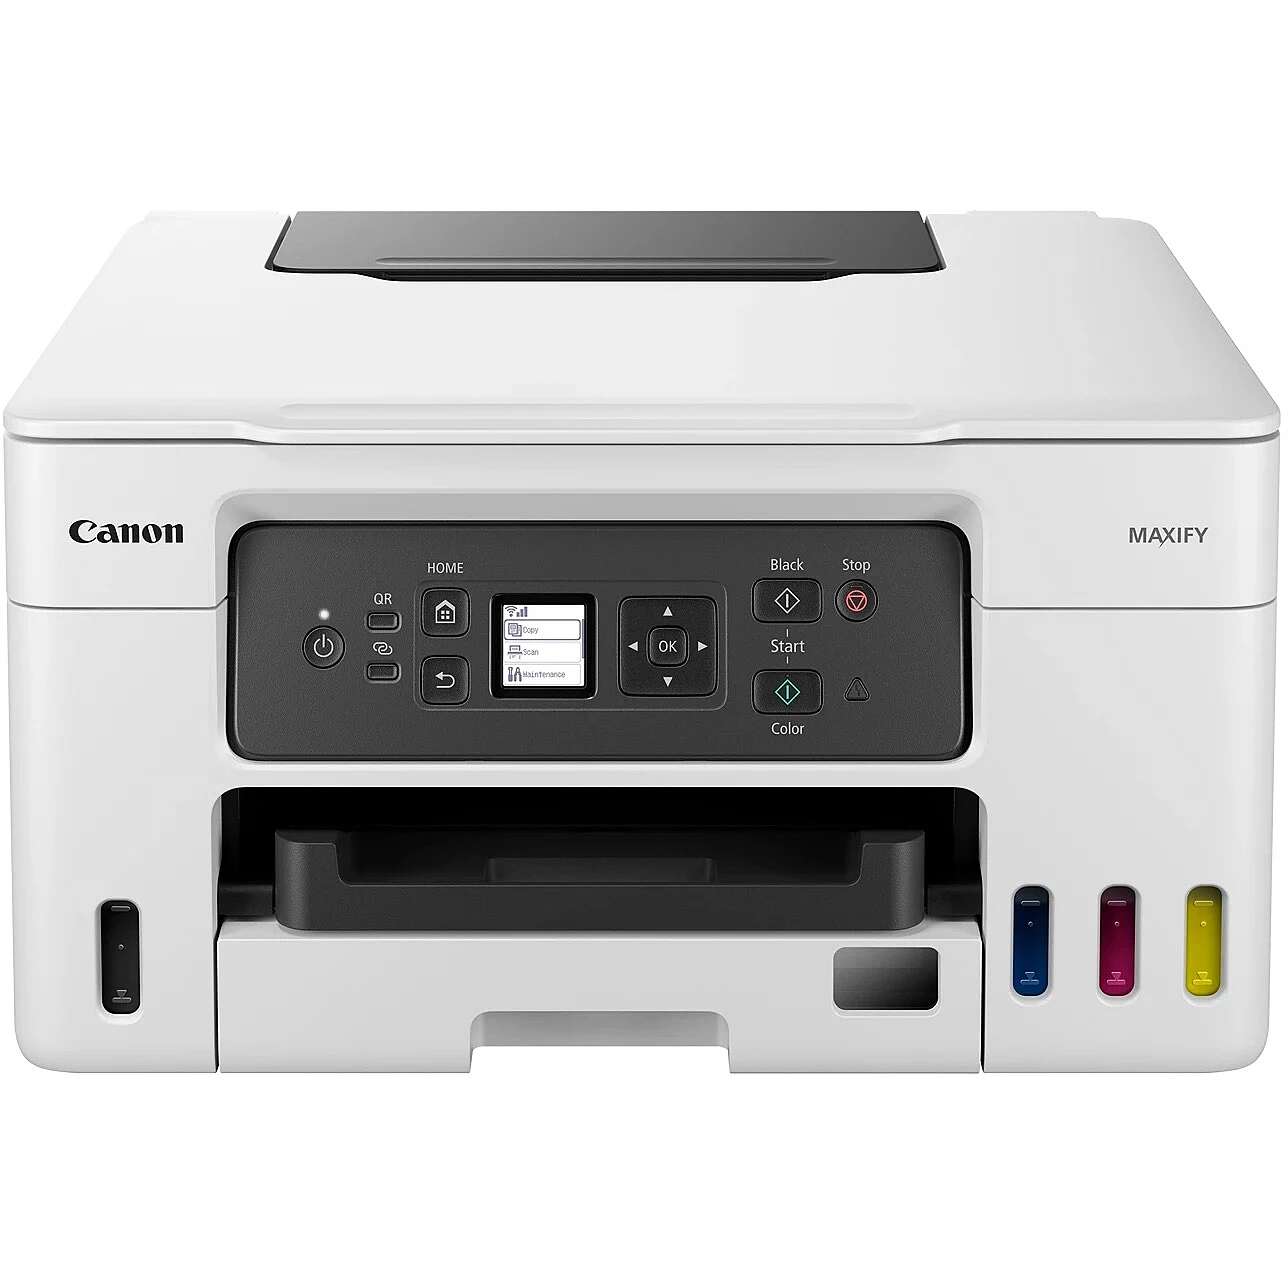 Canon maxify gx3050 multifunkciós színes tintasugaras nyomtató